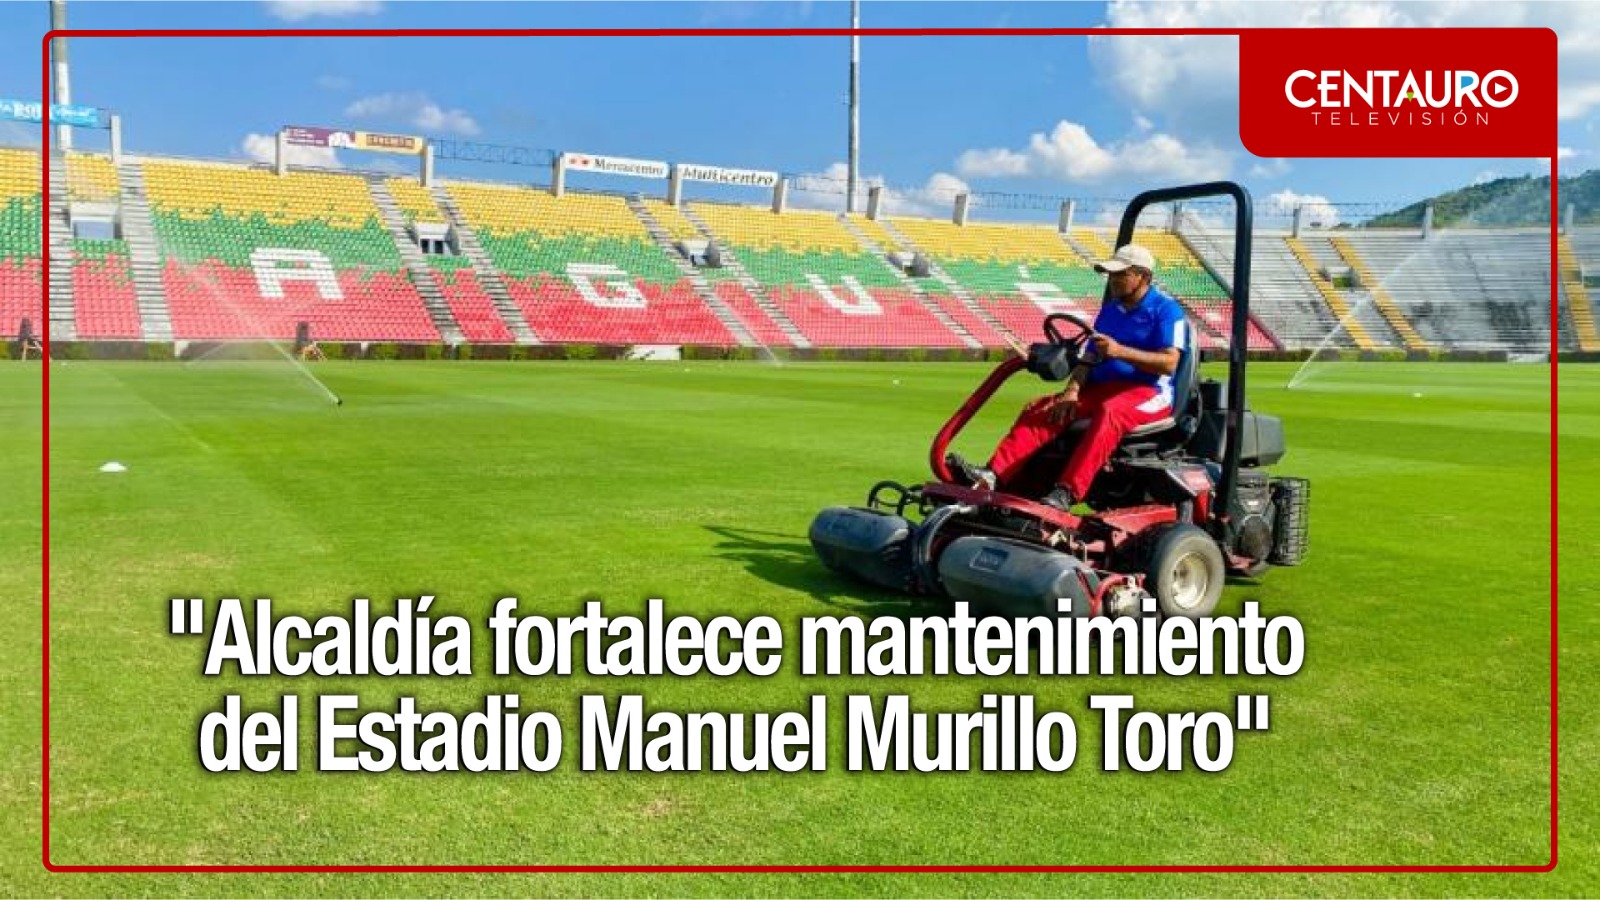 Alcaldía fortalece mantenimiento del estadio Murillo Toro